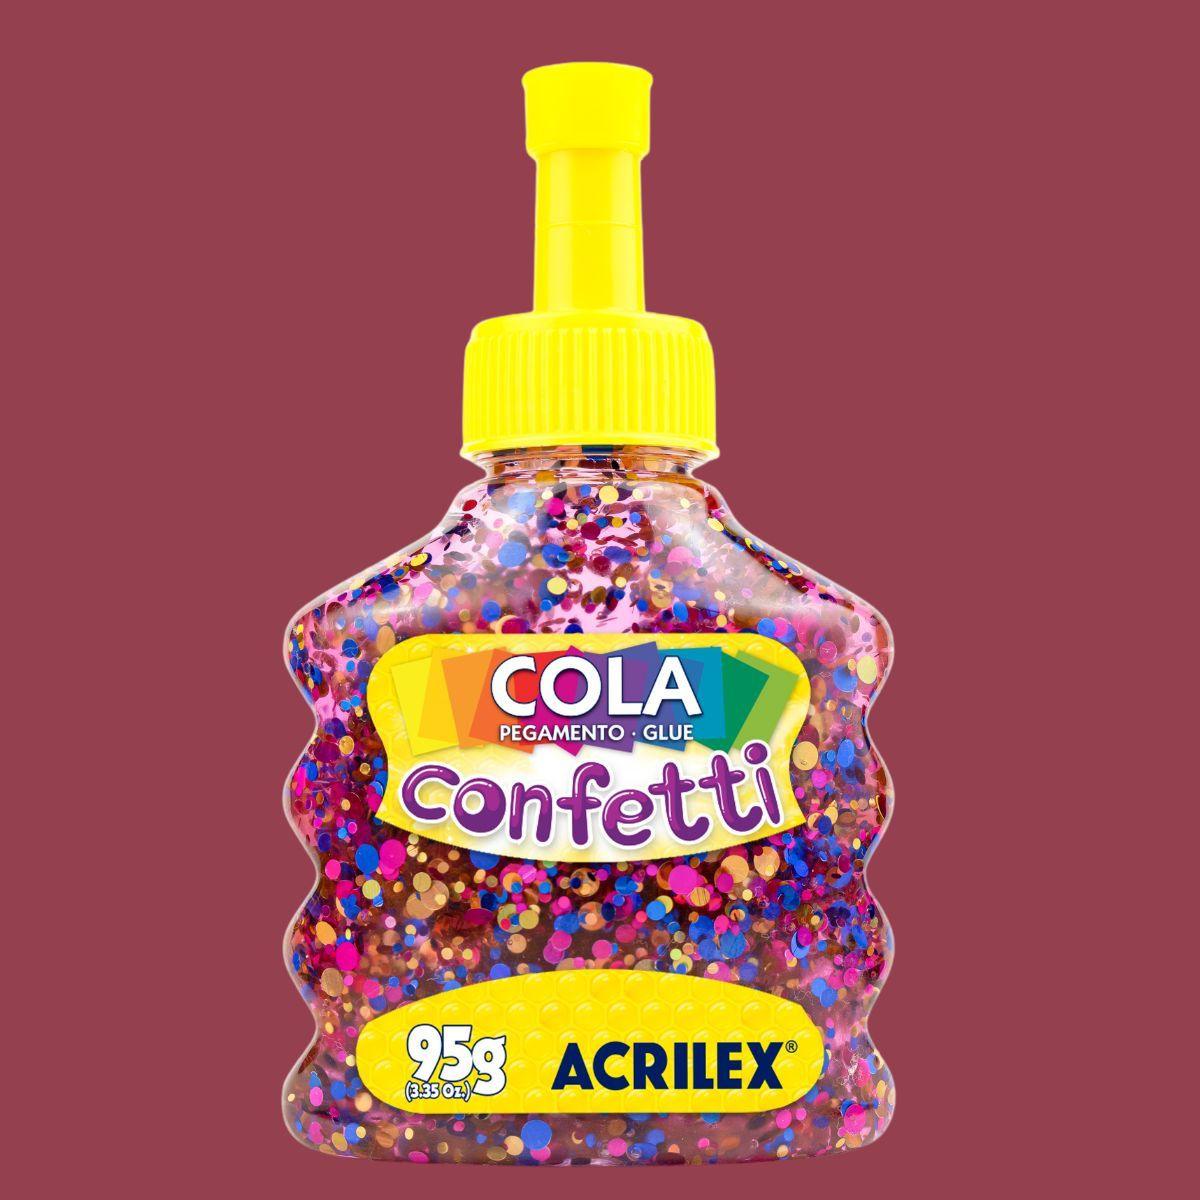 Cola Confetti Acrilex 95g - Palácio da Arte